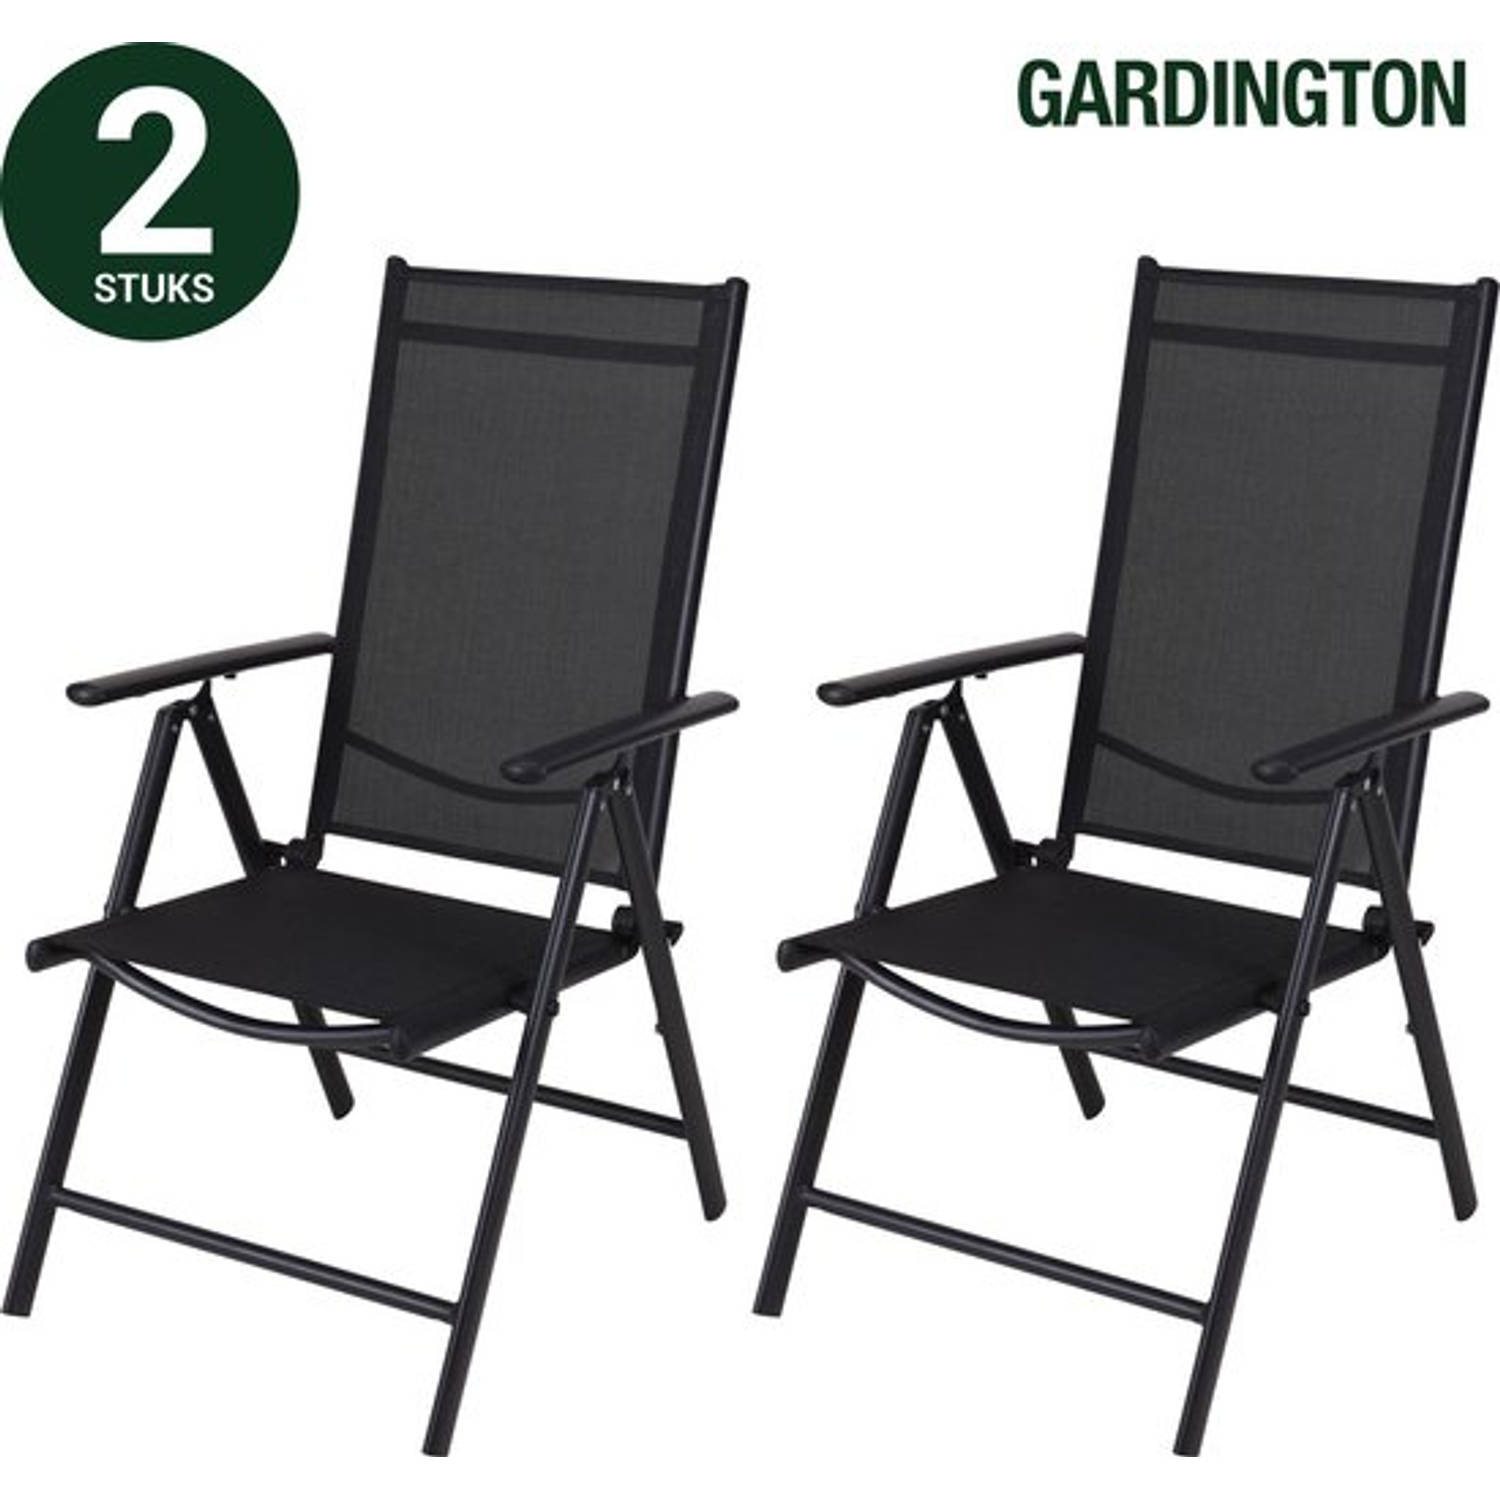 Gardington Tuinstoelen - Klapstoel - Vouwstoel voor op Terras/Tuin/Camping - Tuinset - Campingstoel - Set van 2